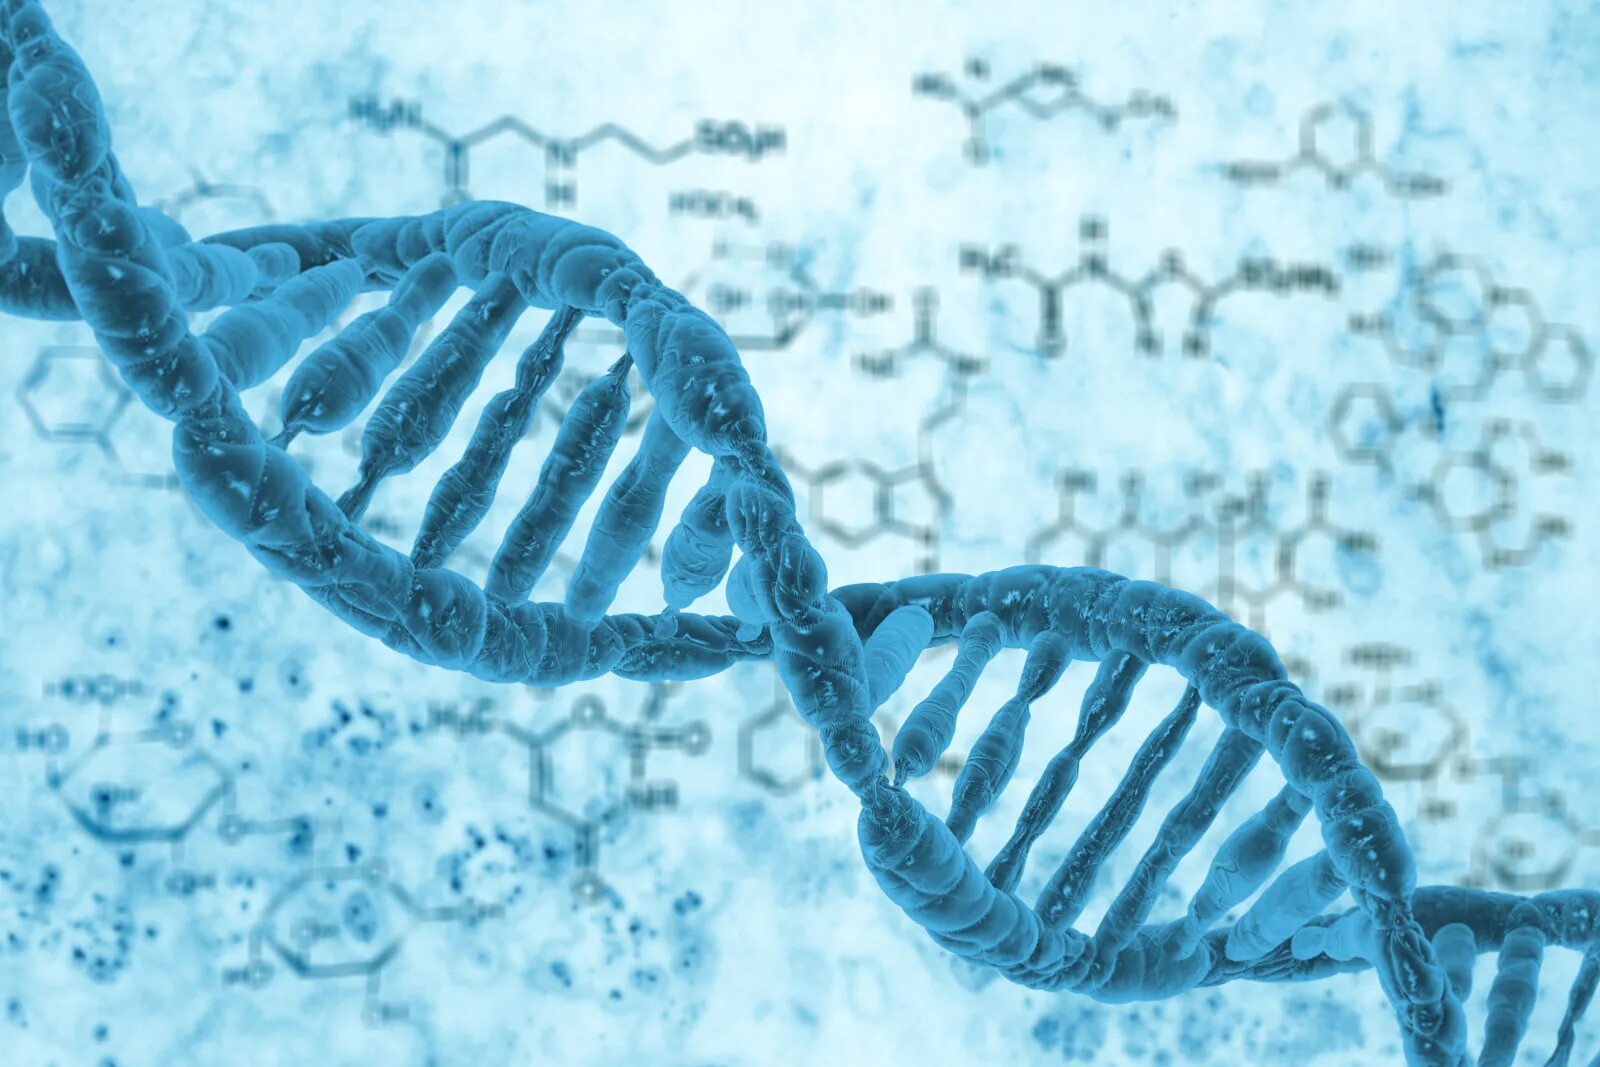 Генетика слюна. ДНК Архей. Клетка ДНК. Цепочка ДНК. Молекула ДНК под микроскопом.